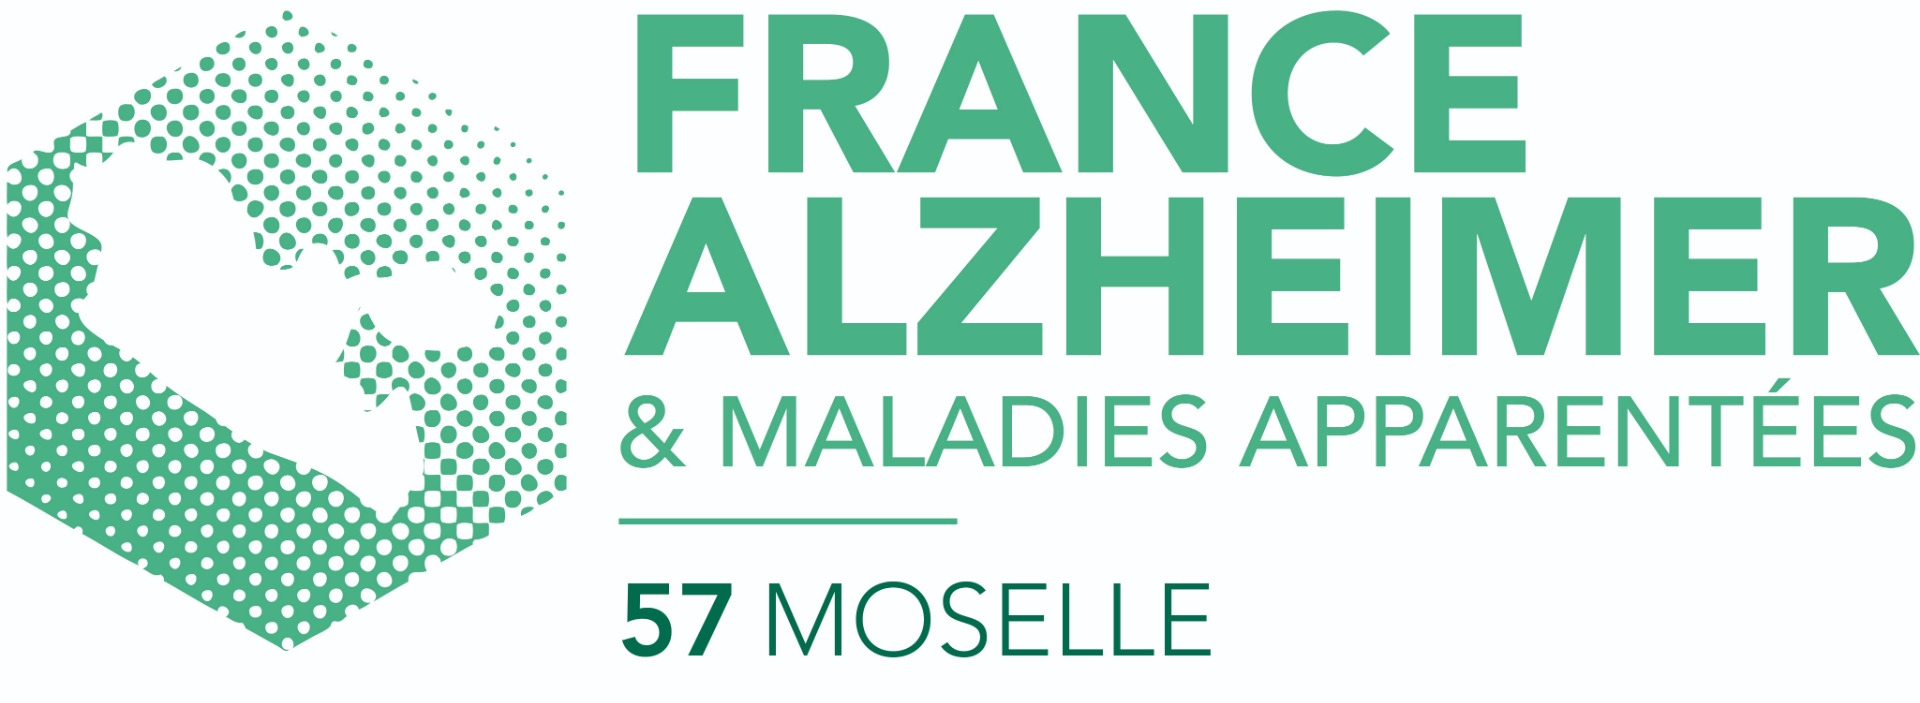 Photo de France Alzheimer Moselle à METZ